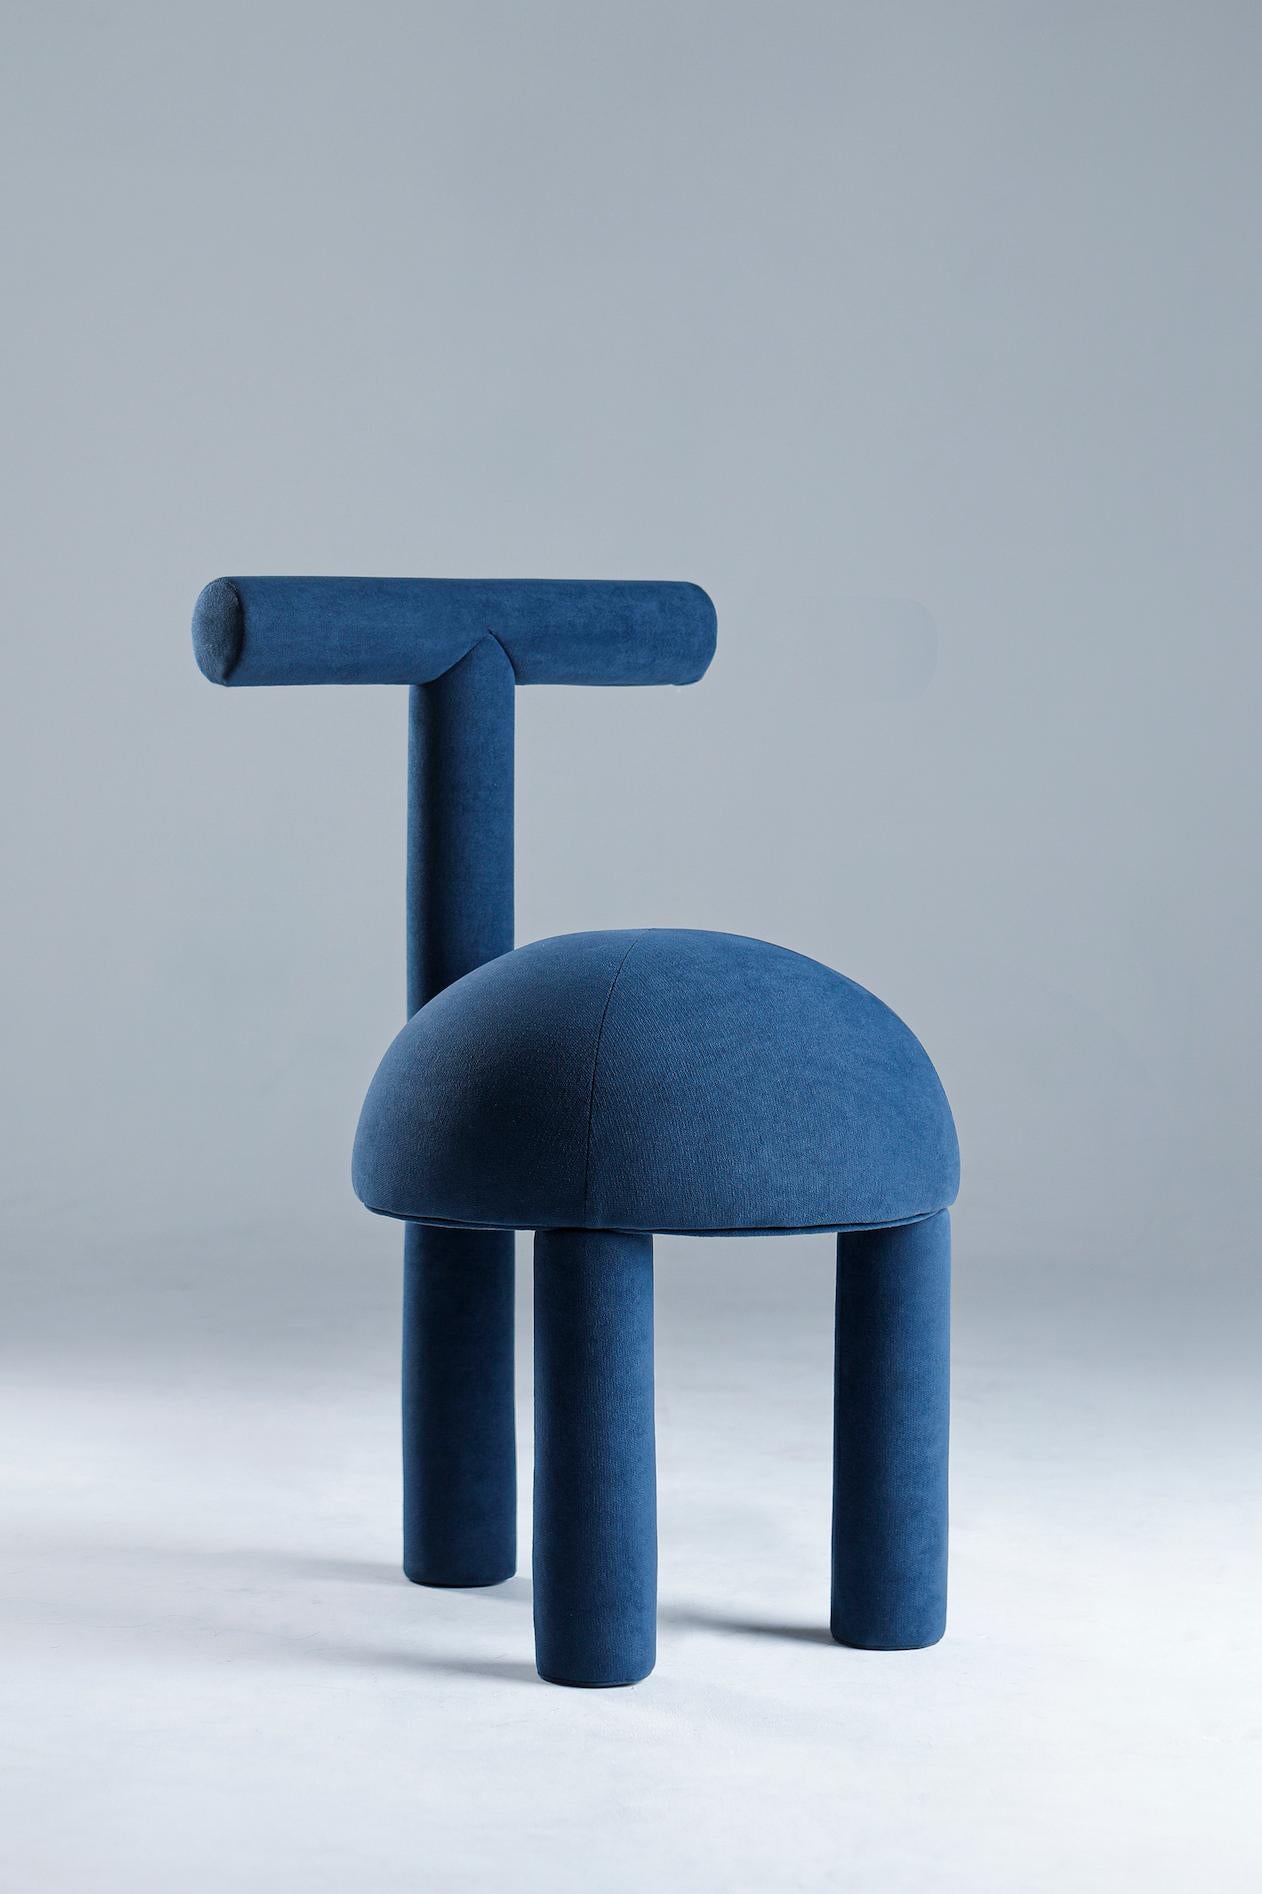 Ein dekorativer Stuhl mit geometrischem Muster.
Larissa Batista begann mit dem Entwurf der Jolly Seats Collection als künstlerische Darstellung der kubistischen Bewegung des frühen 20. Jahrhunderts. Die Jolly Seats Collection entwickelte sich